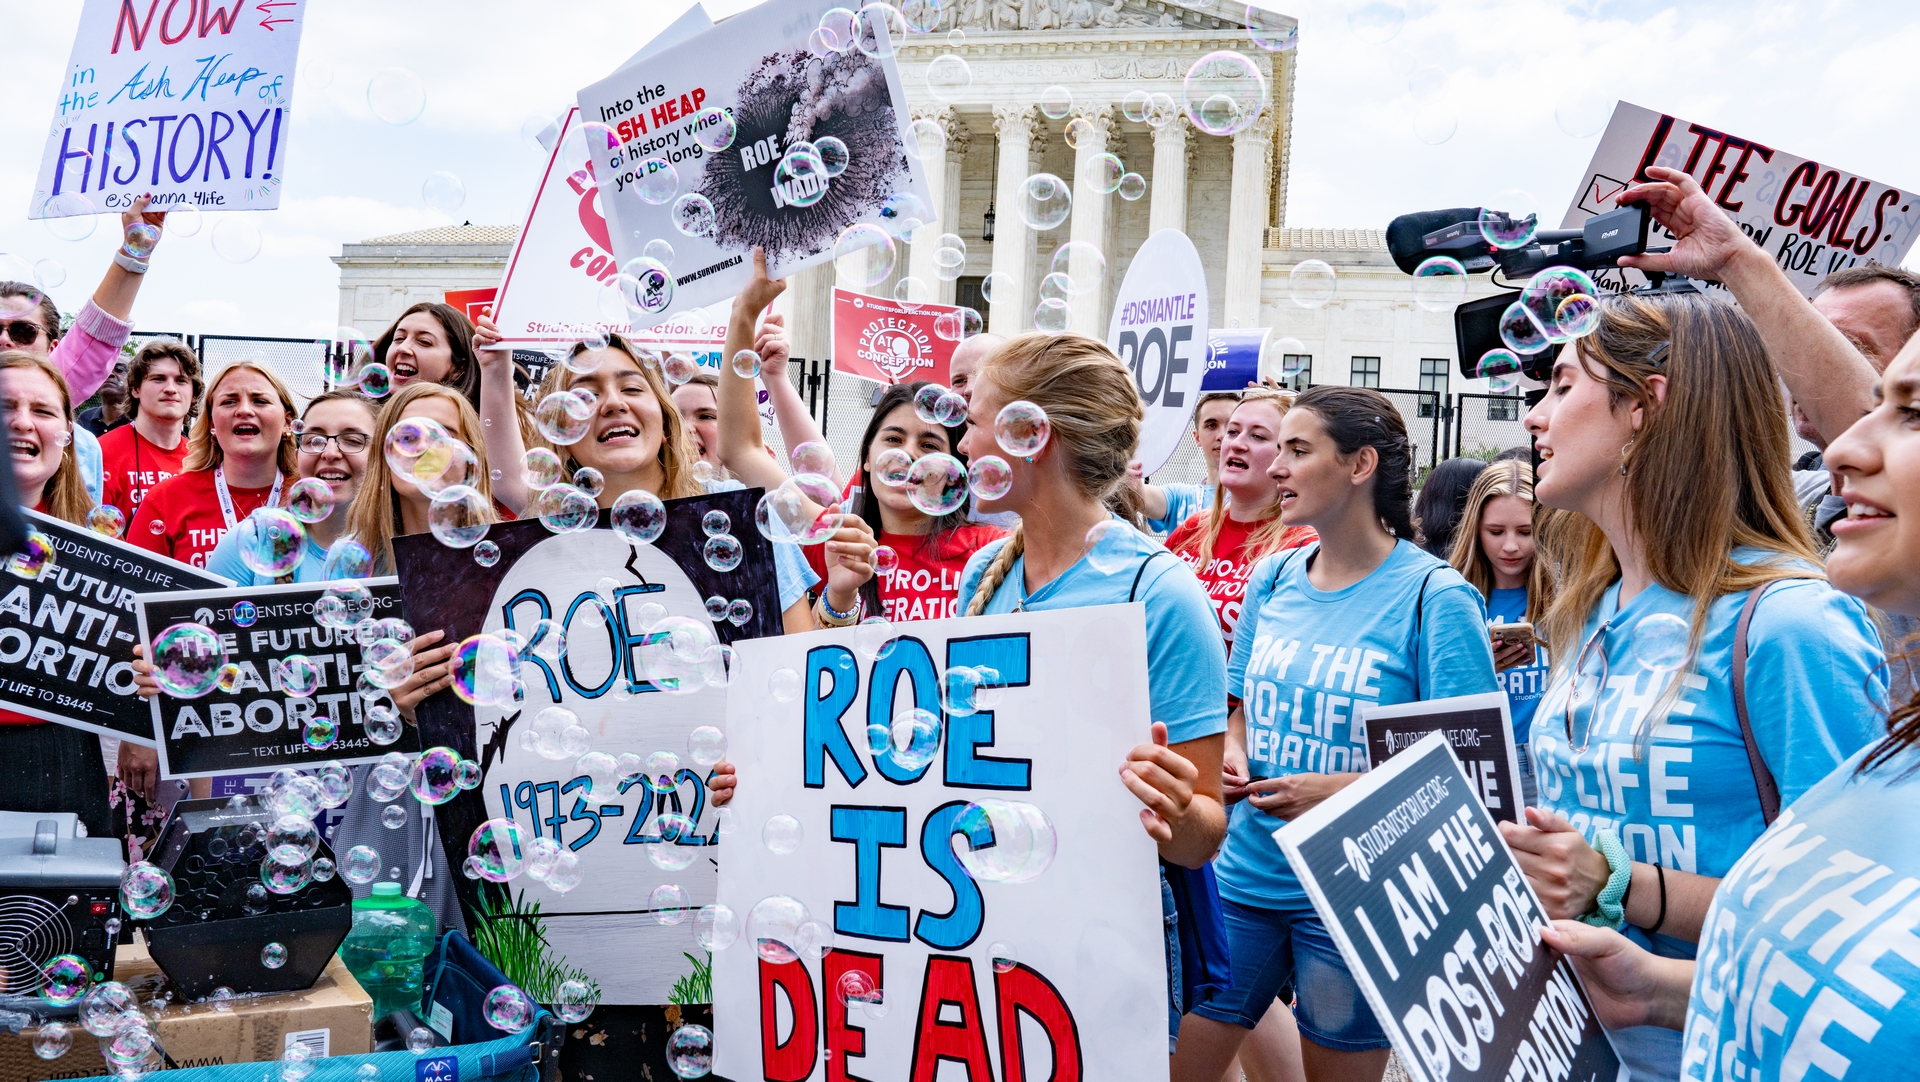 Manifestantes 'pro-life' devant la  Cour Suprême | Flickr Victoria Pickering CC-BY-SA-2.0

